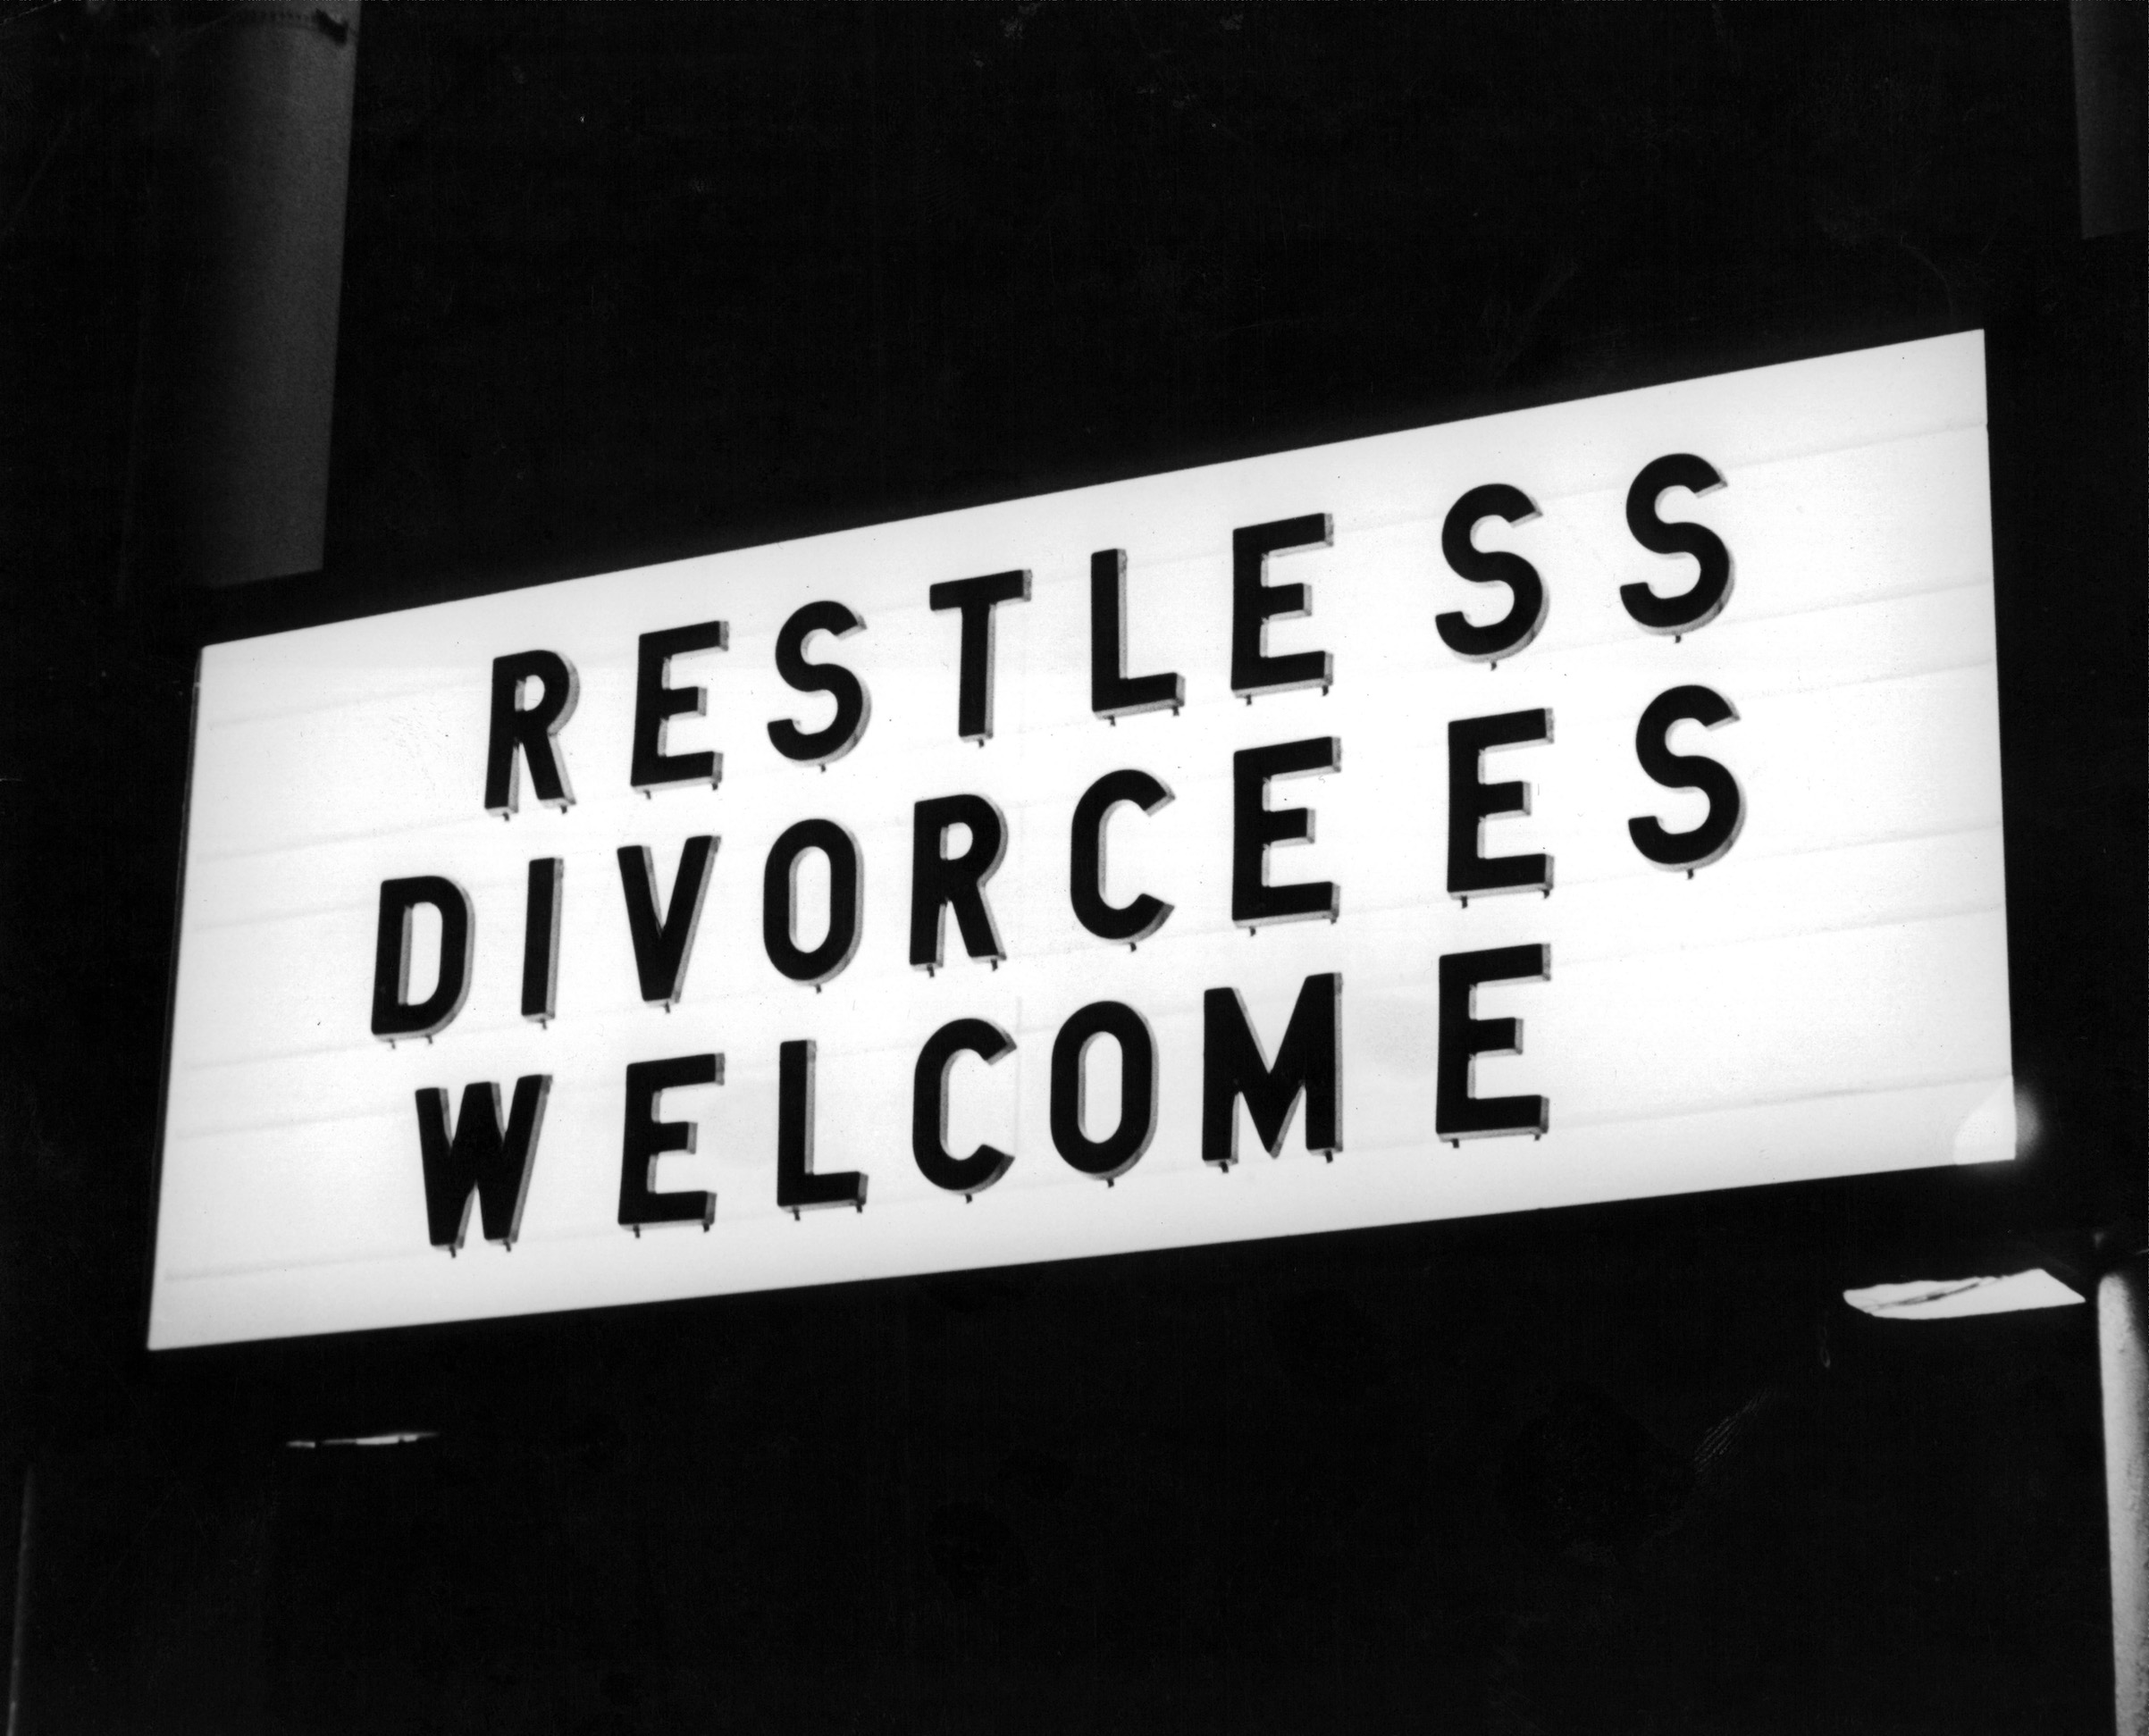 DIVORCEES WELCOME